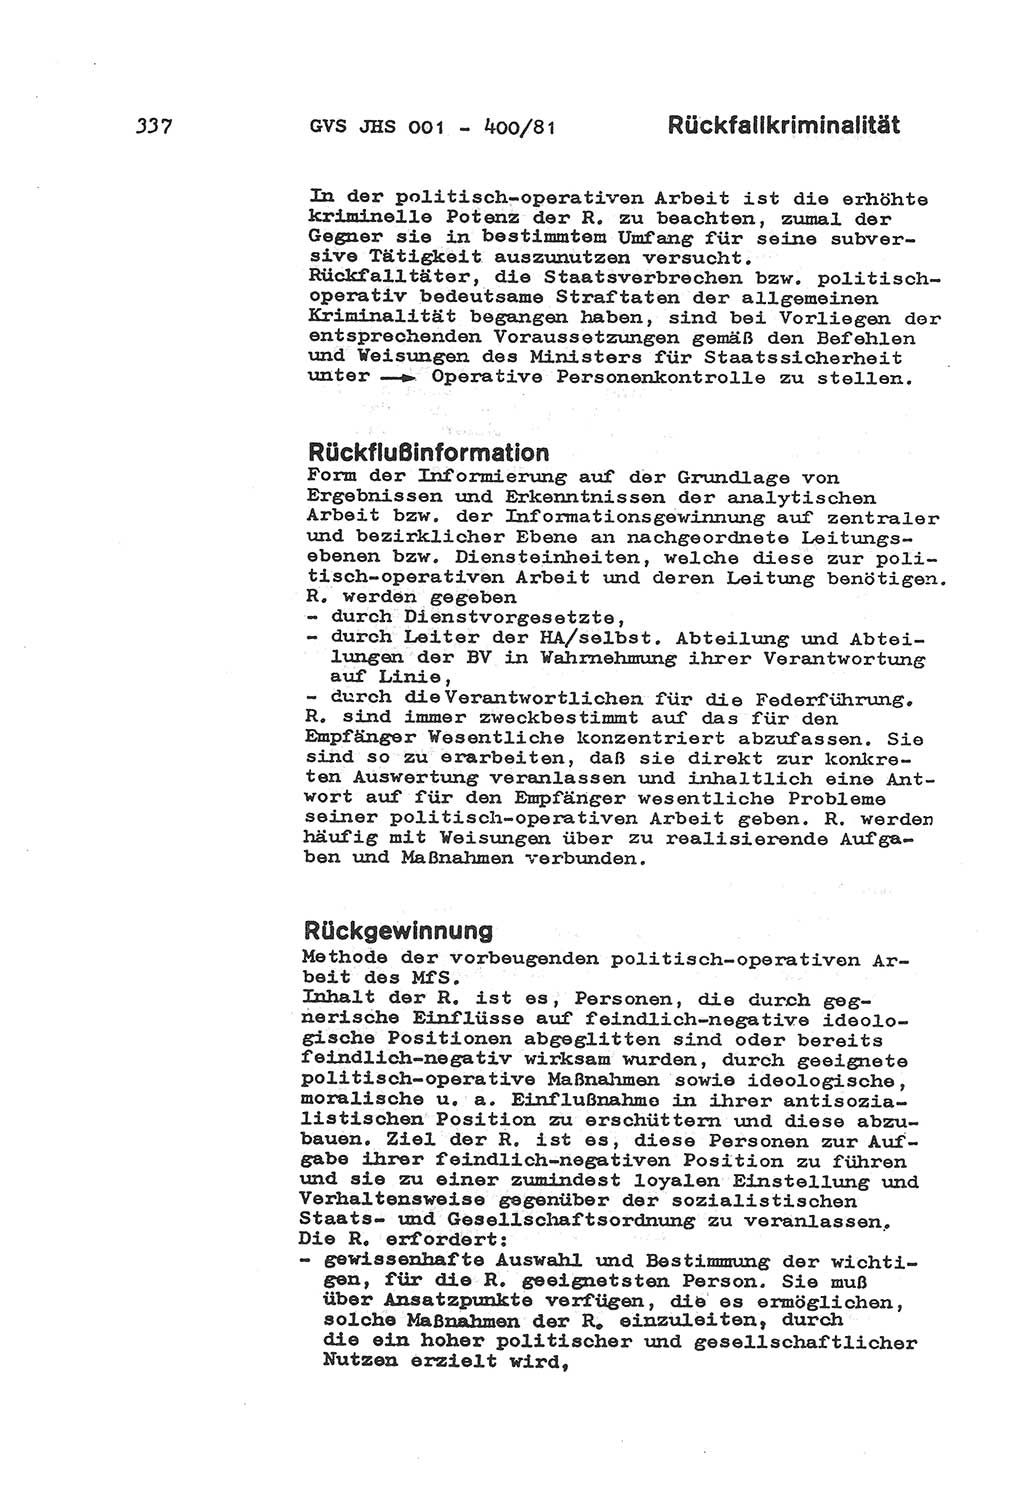 Wörterbuch der politisch-operativen Arbeit, Ministerium für Staatssicherheit (MfS) [Deutsche Demokratische Republik (DDR)], Juristische Hochschule (JHS), Geheime Verschlußsache (GVS) o001-400/81, Potsdam 1985, Blatt 337 (Wb. pol.-op. Arb. MfS DDR JHS GVS o001-400/81 1985, Bl. 337)